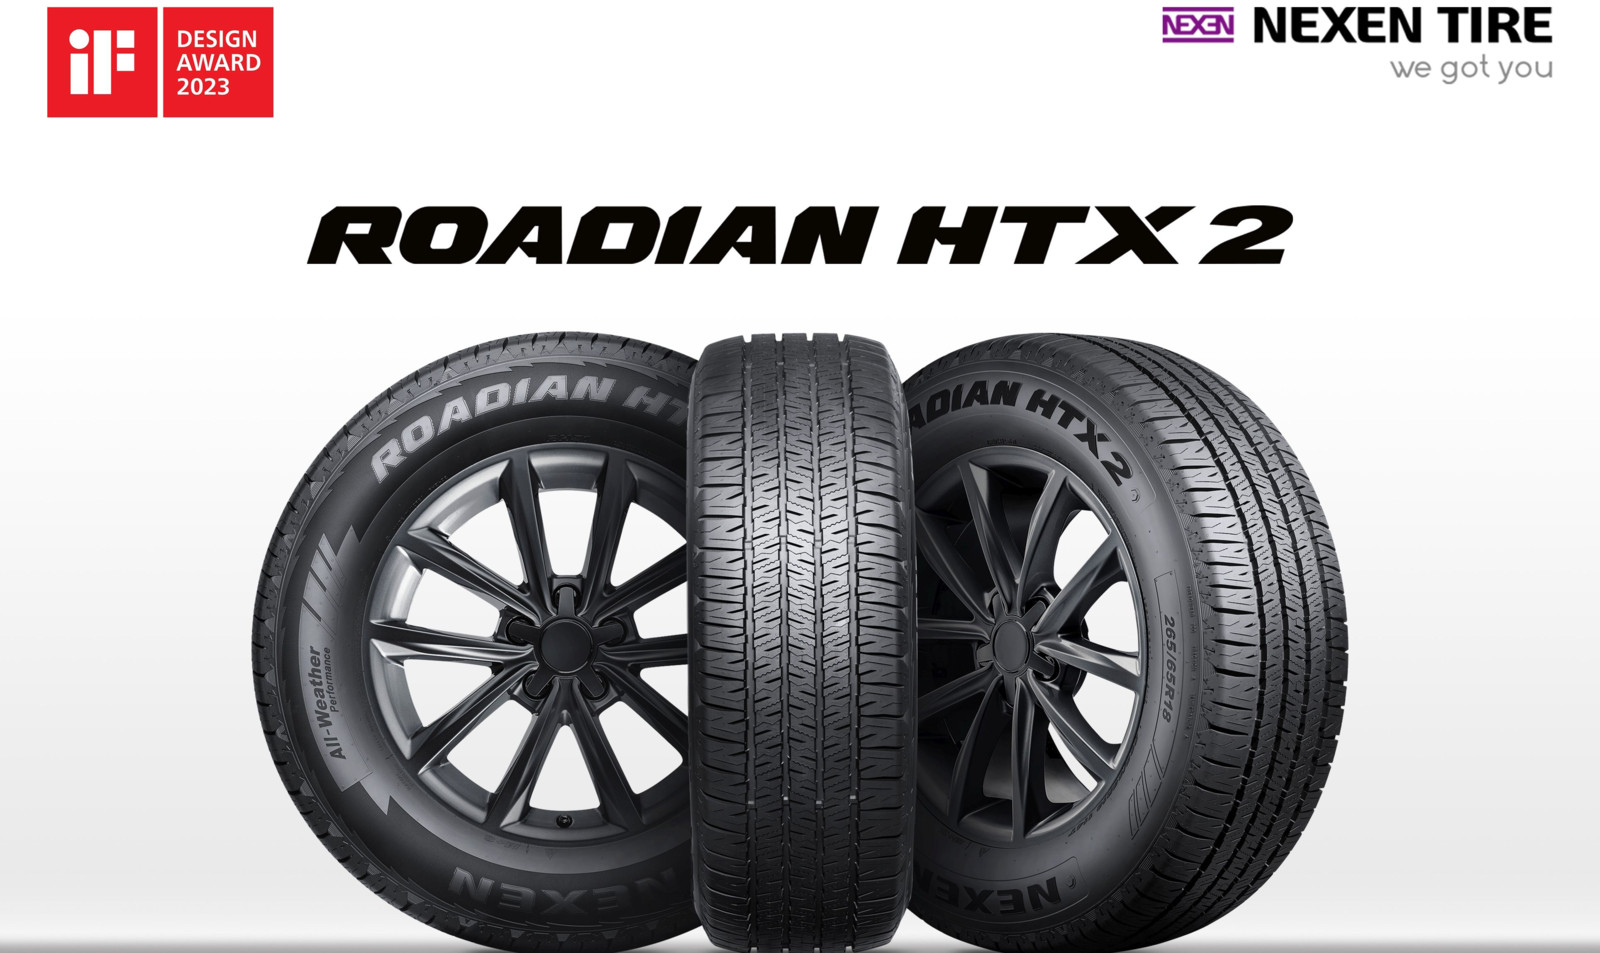 Der Roadian HTX 2-Reifen punktet laut Hersteller mit optimierten Fahreigenschaften und längerer Laufleistung. 